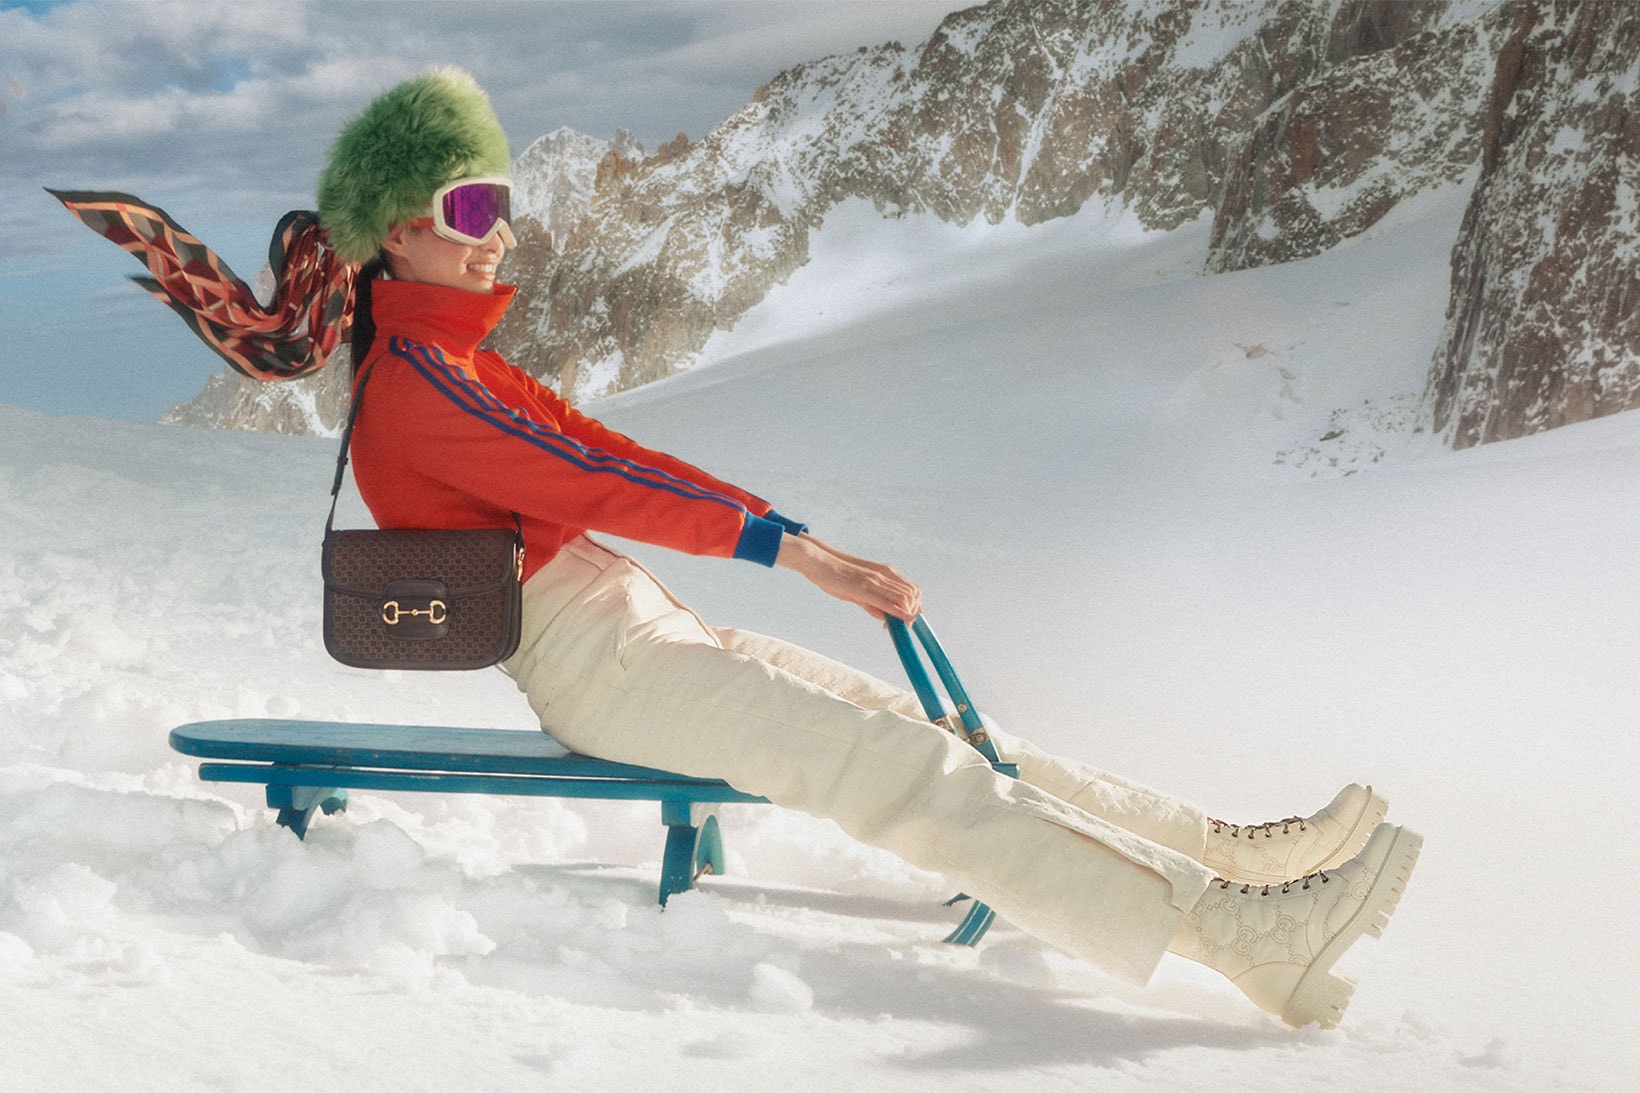 Gucci Apres-Ski Campaign adidas Collaboration Handbags Accessories Outerwear Release Info